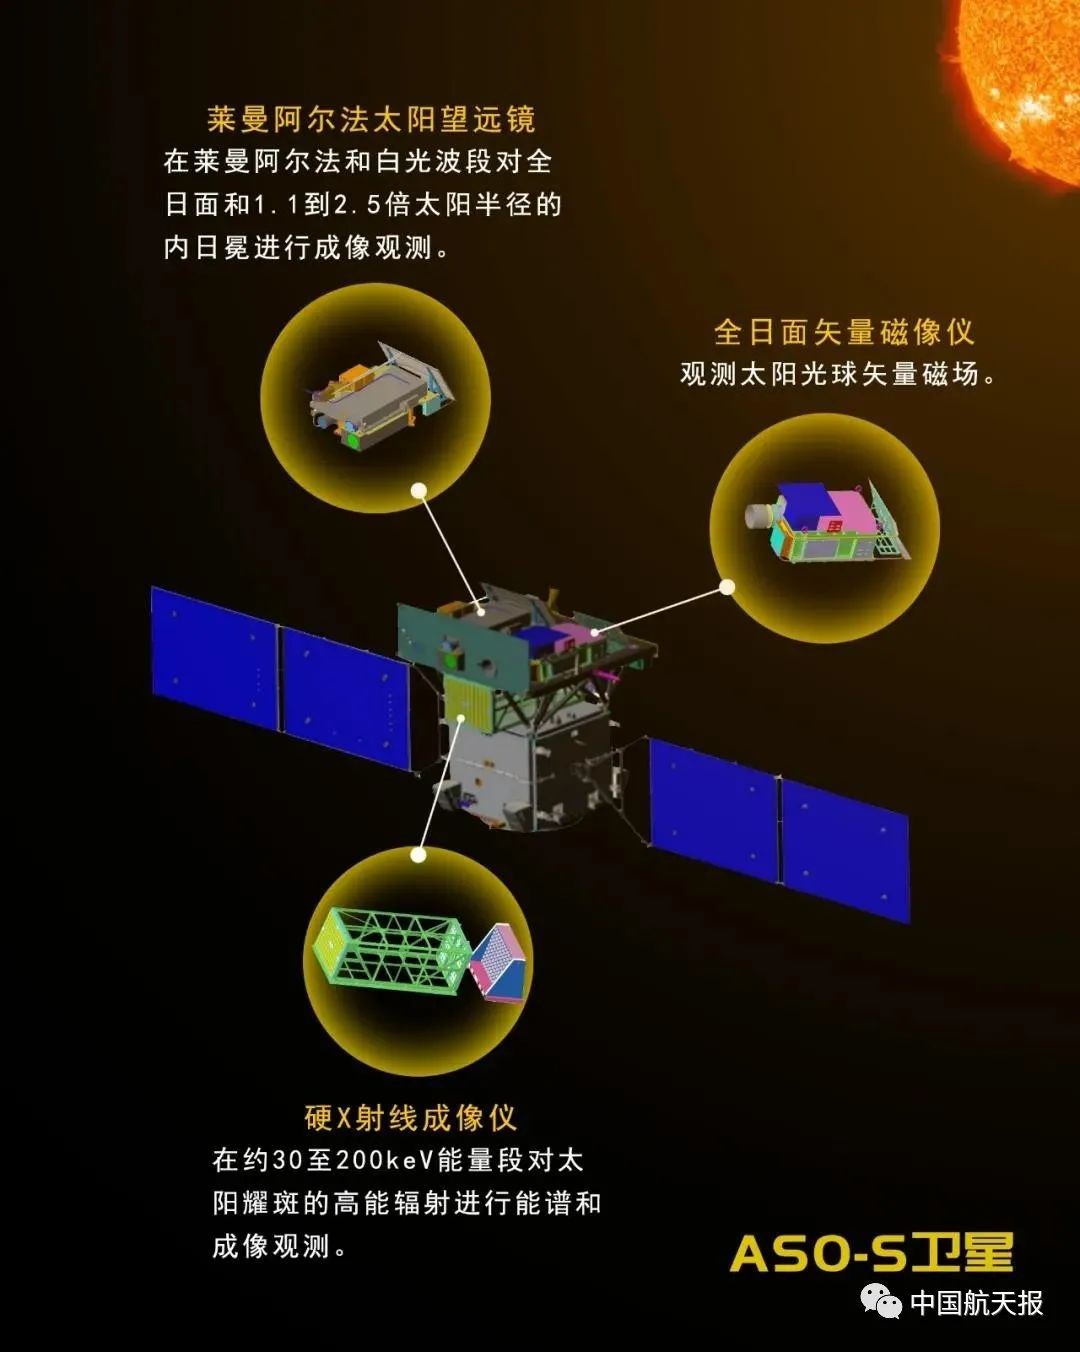 中国首颗太阳探测卫星明年发射_图1-2